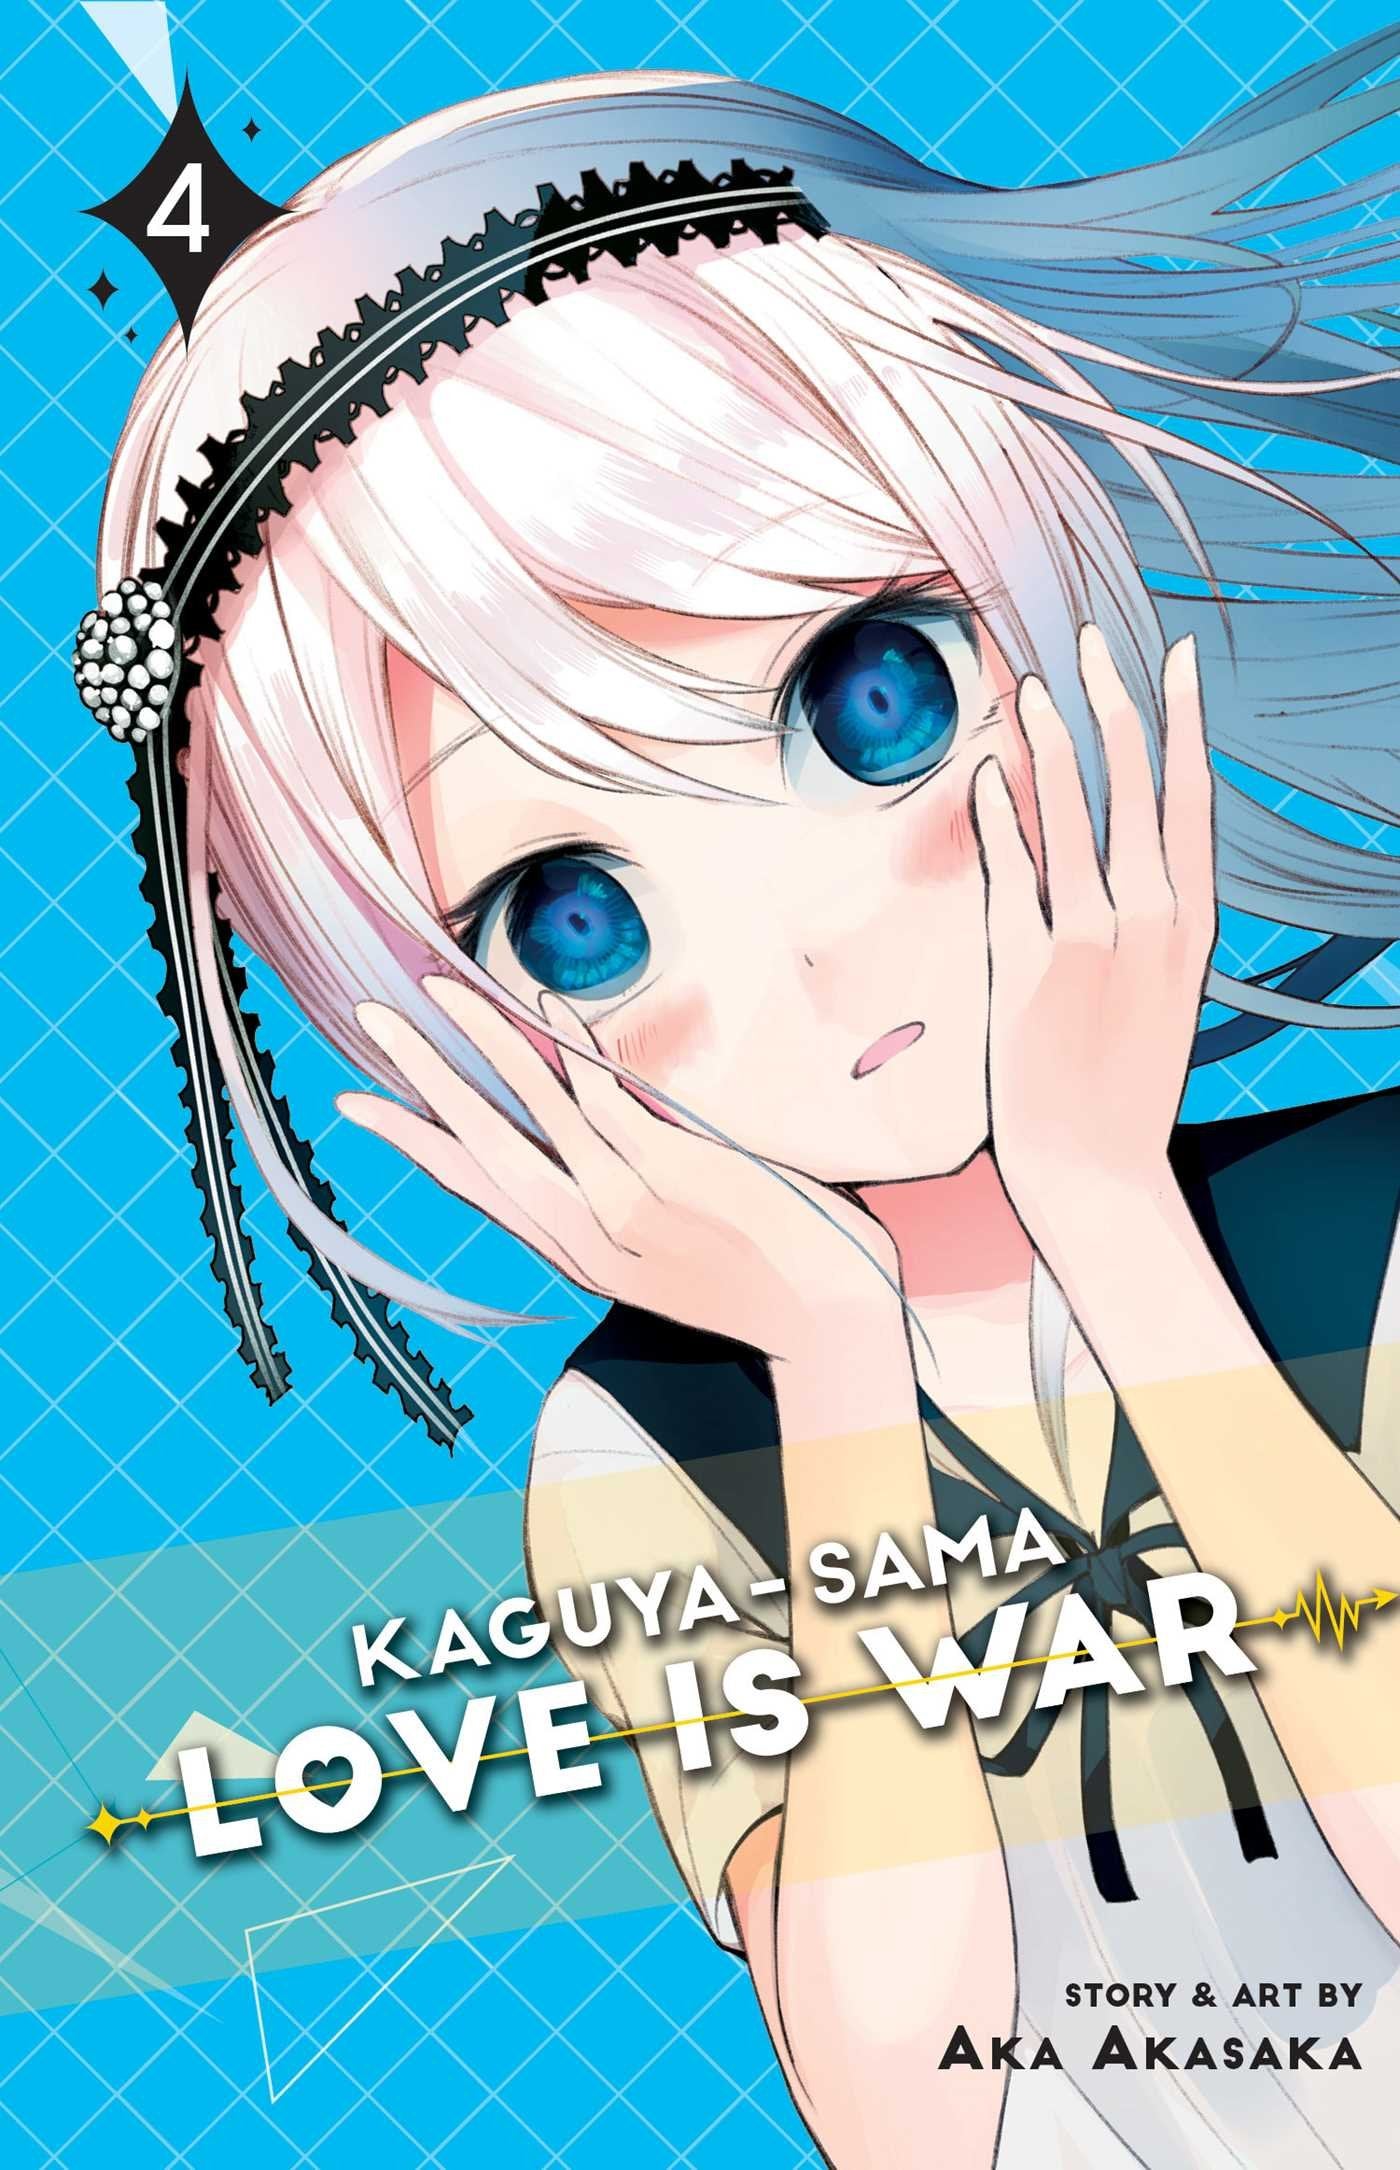 Kaguya-sama: Love is War! #04